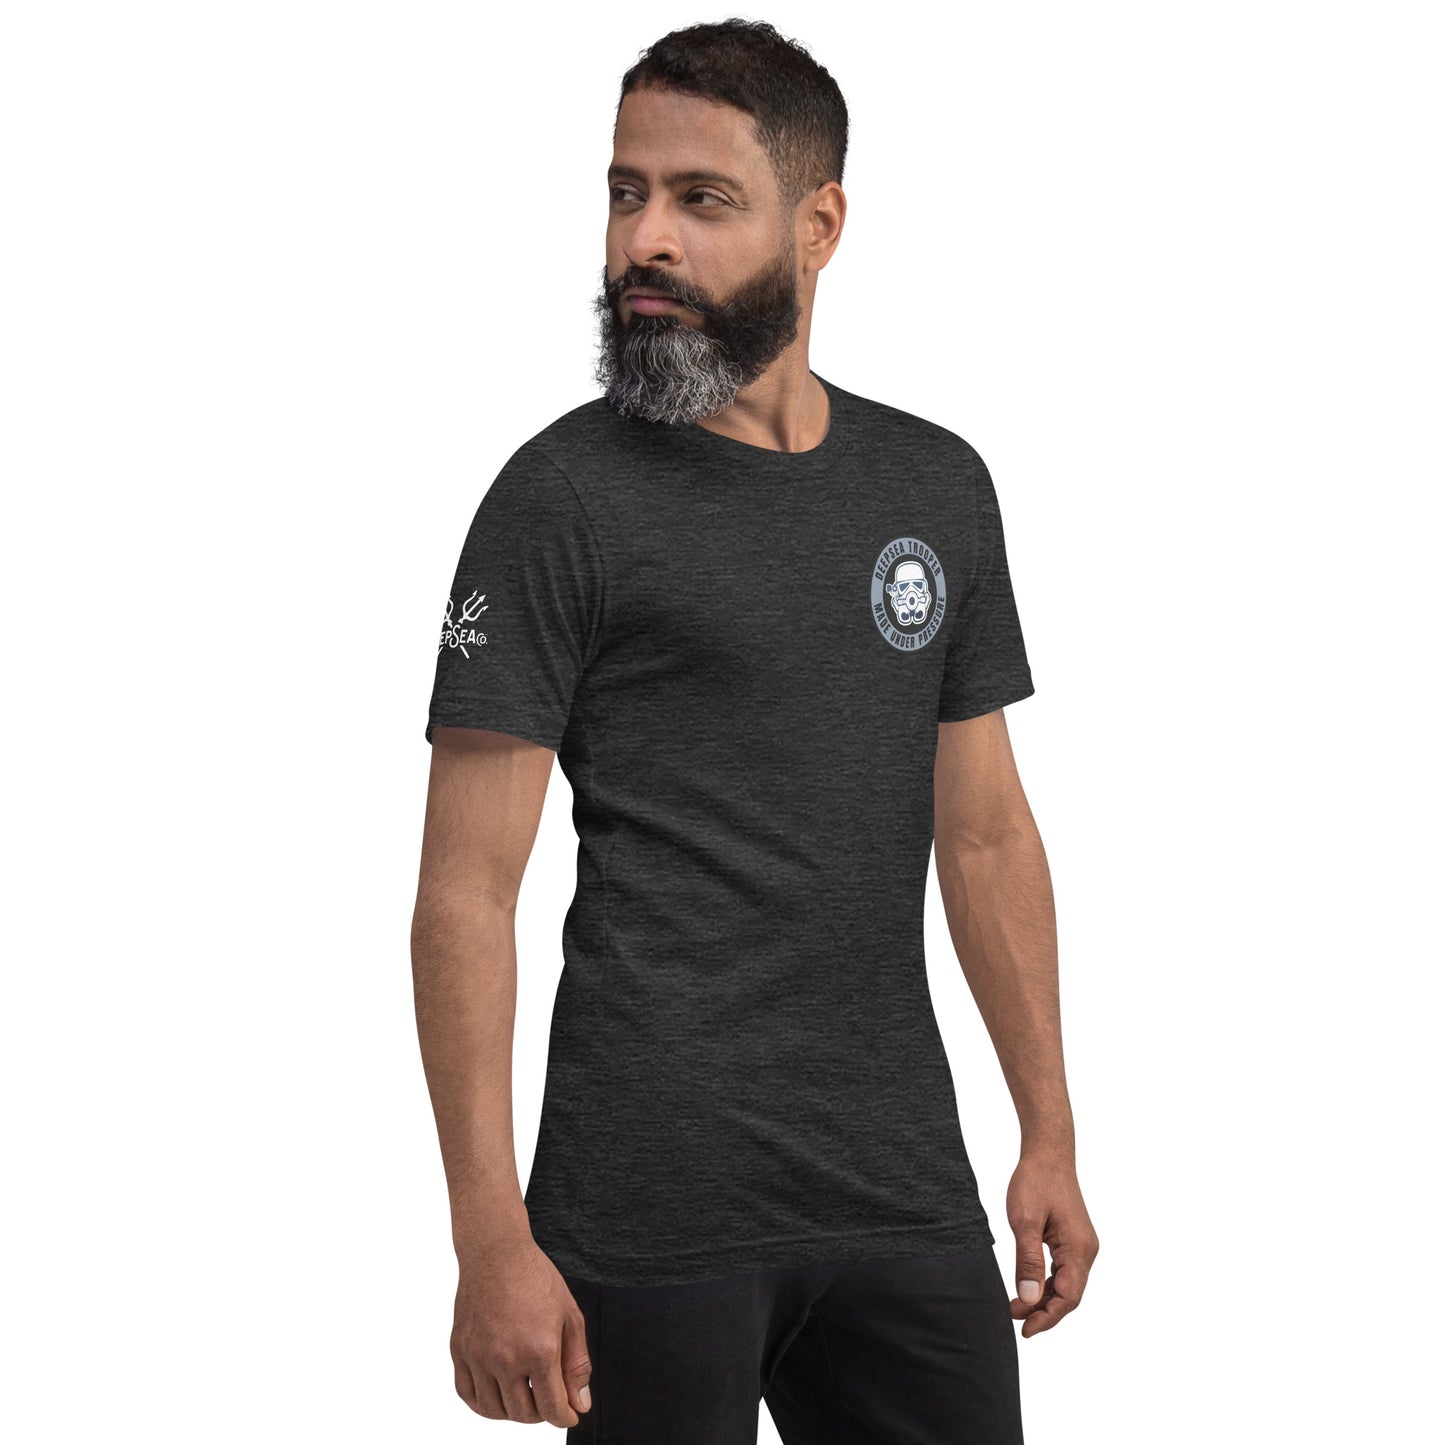 DeepSea Trooper Unisex t-shirt